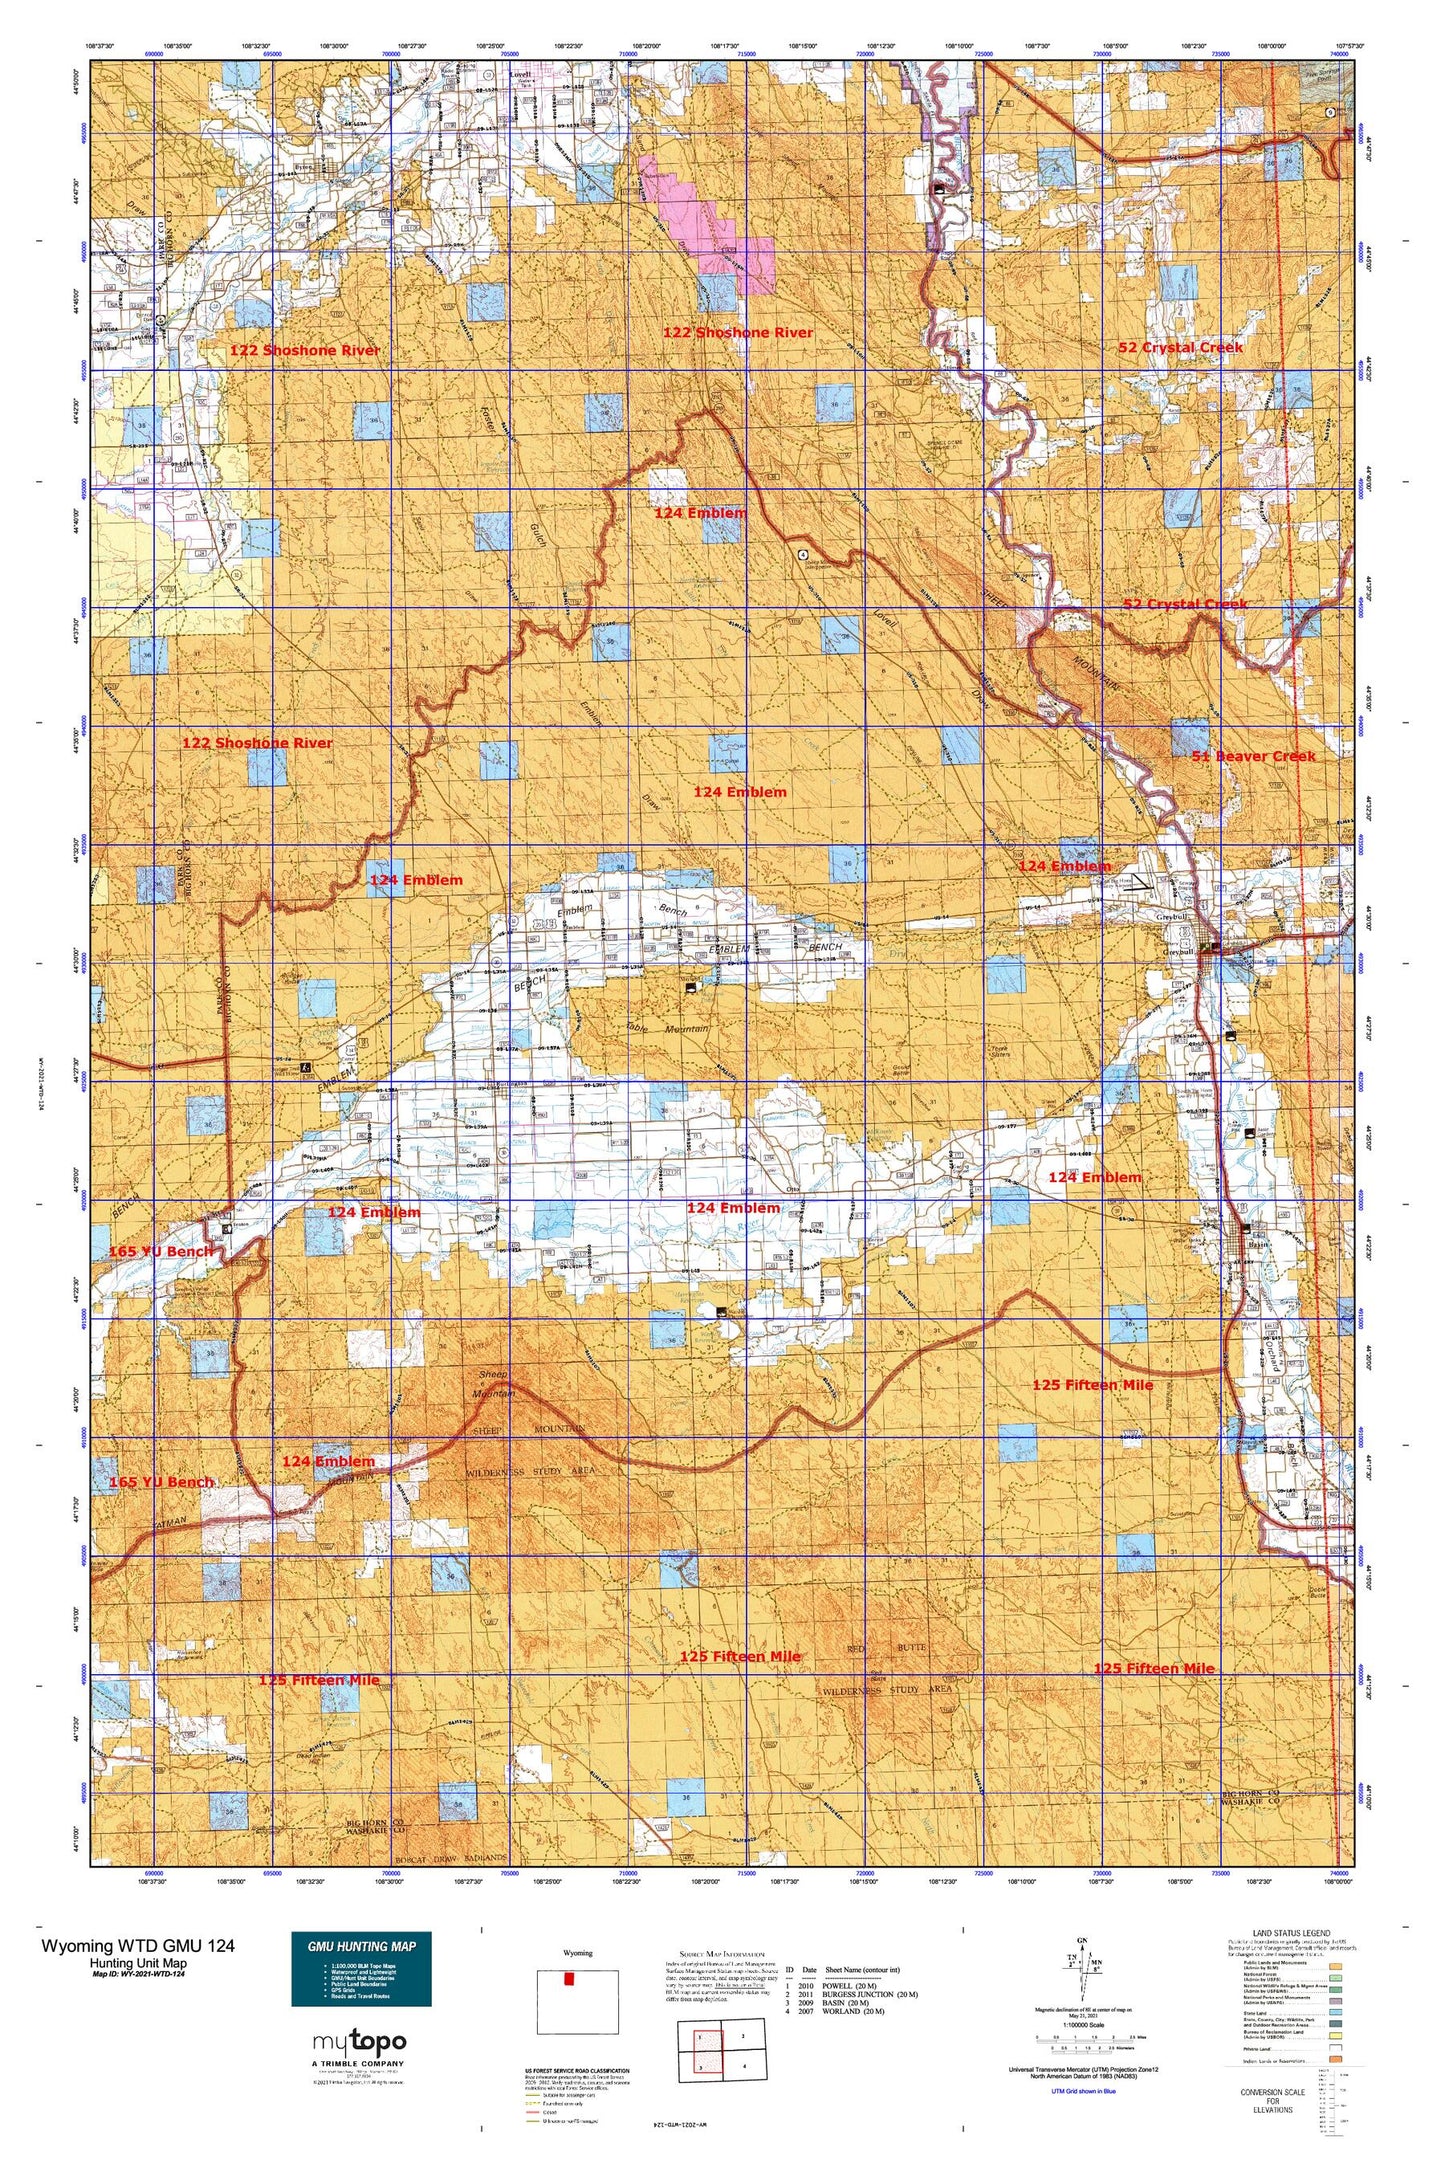 Wyoming Whitetail Deer GMU 124 Map Image